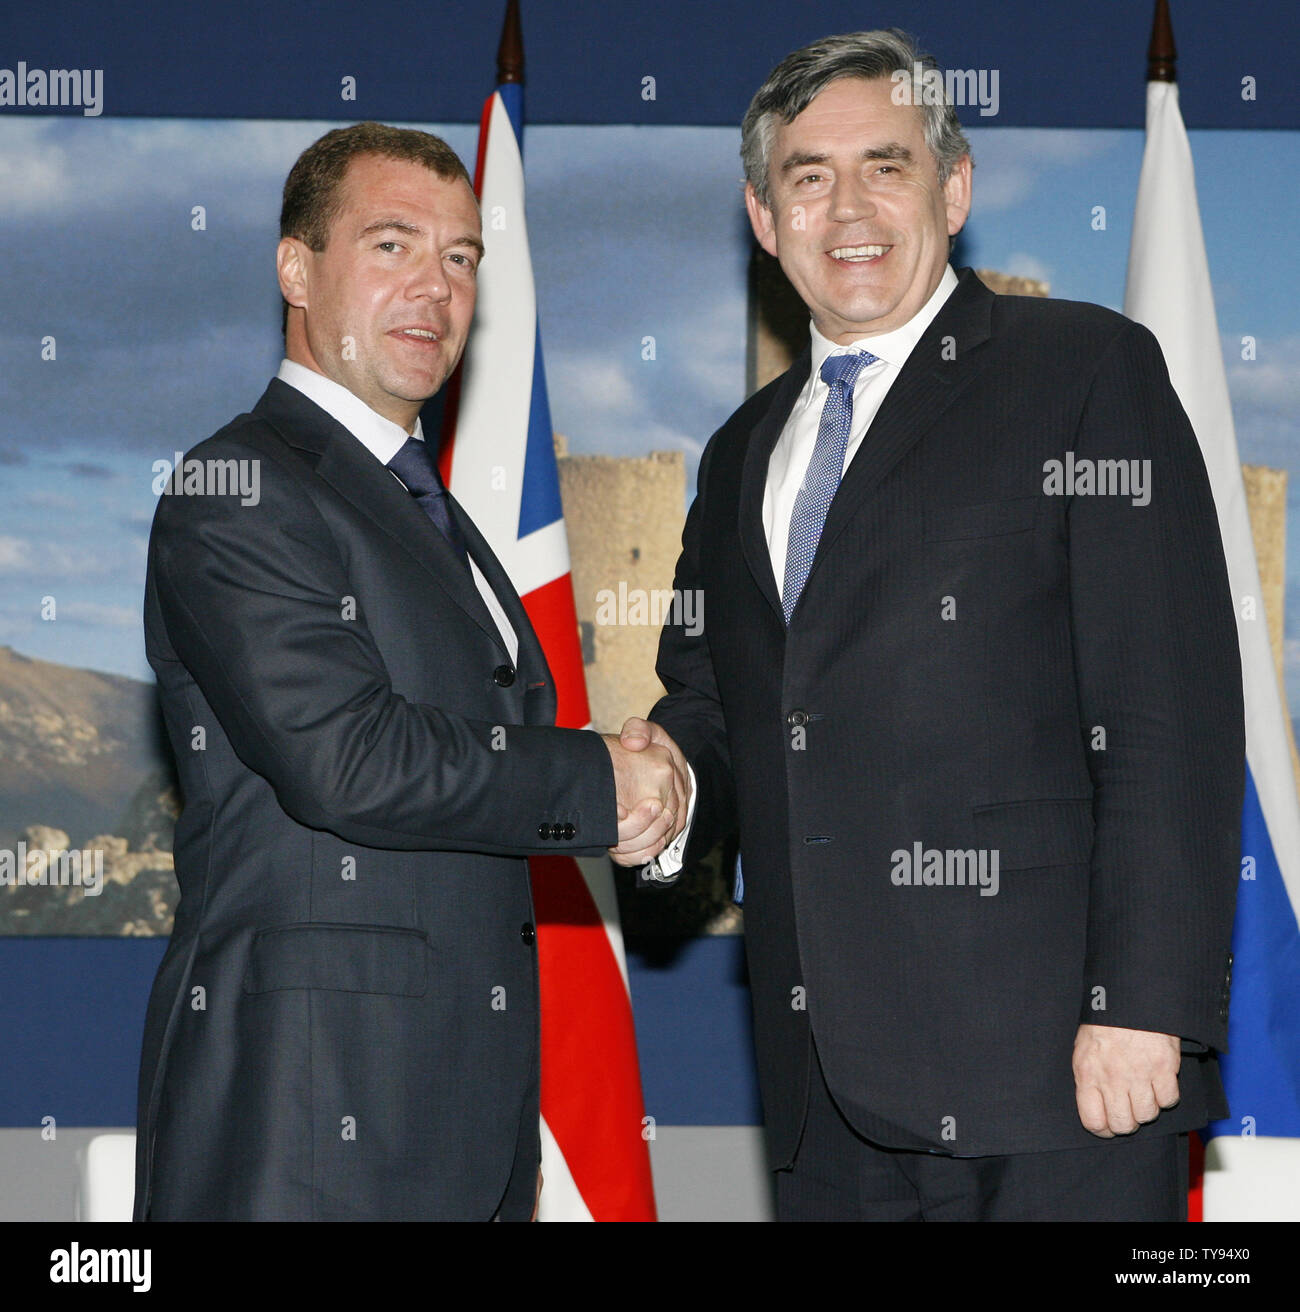 Der britische Premierminister Gordon Brown (R) und der russische Präsident Dmitri Medwedew treffen auf dem G8-Gipfel in L'Aquila, Italien am 9. Juli 2009. (UPI Foto/Alex Volgin) Stockfoto